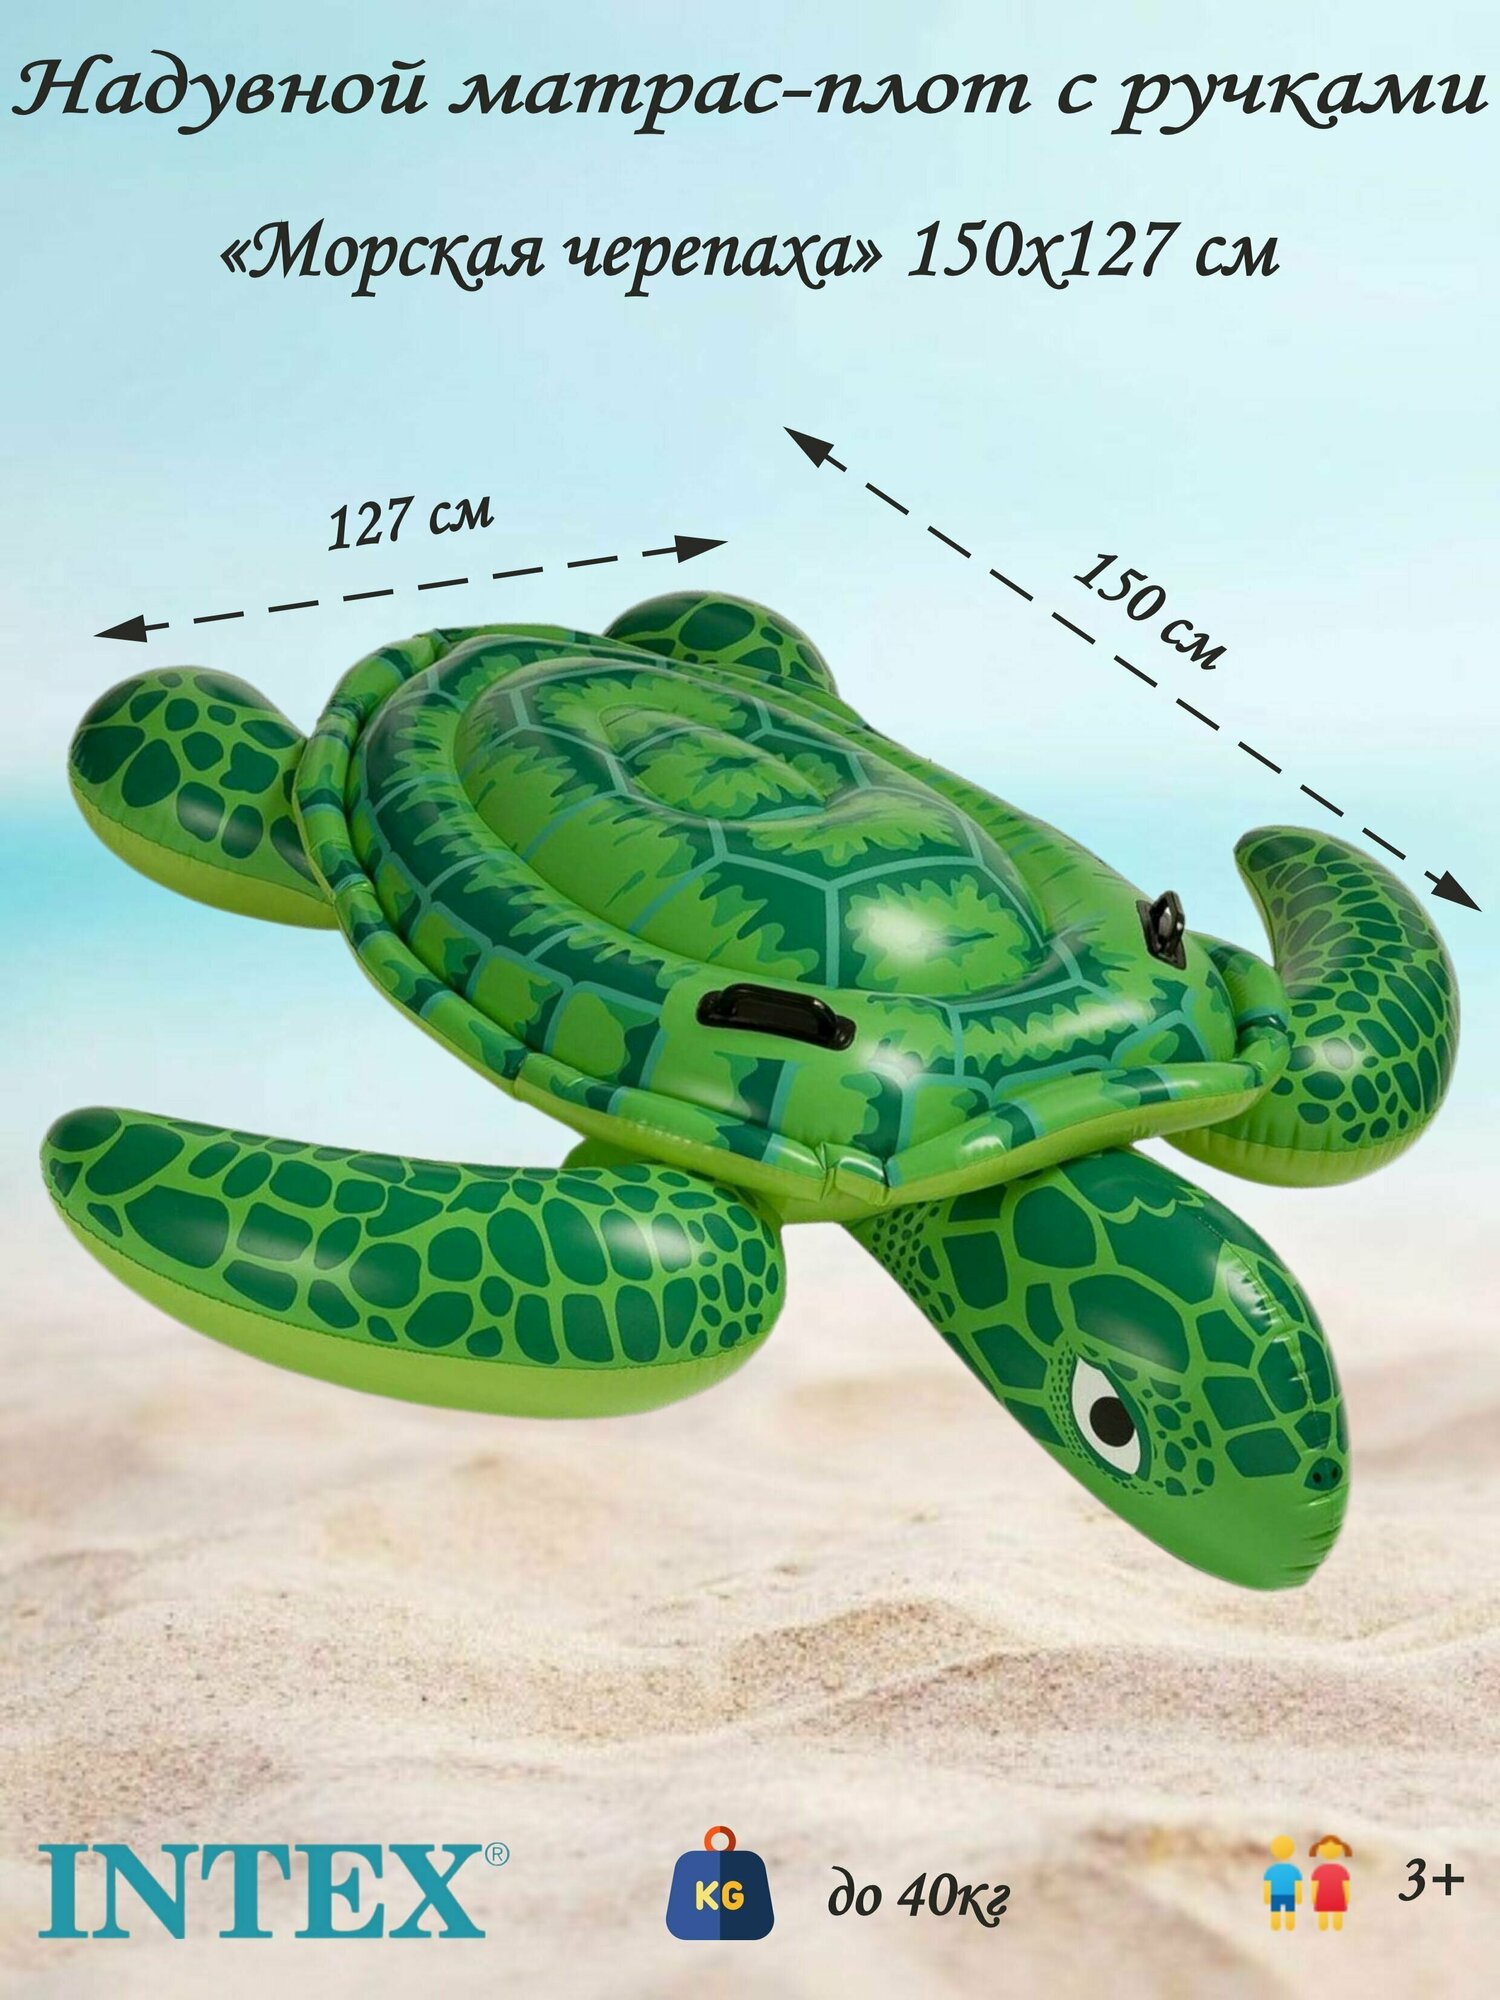 Надувная игрушка-матрас с ручками "Морская черепаха"